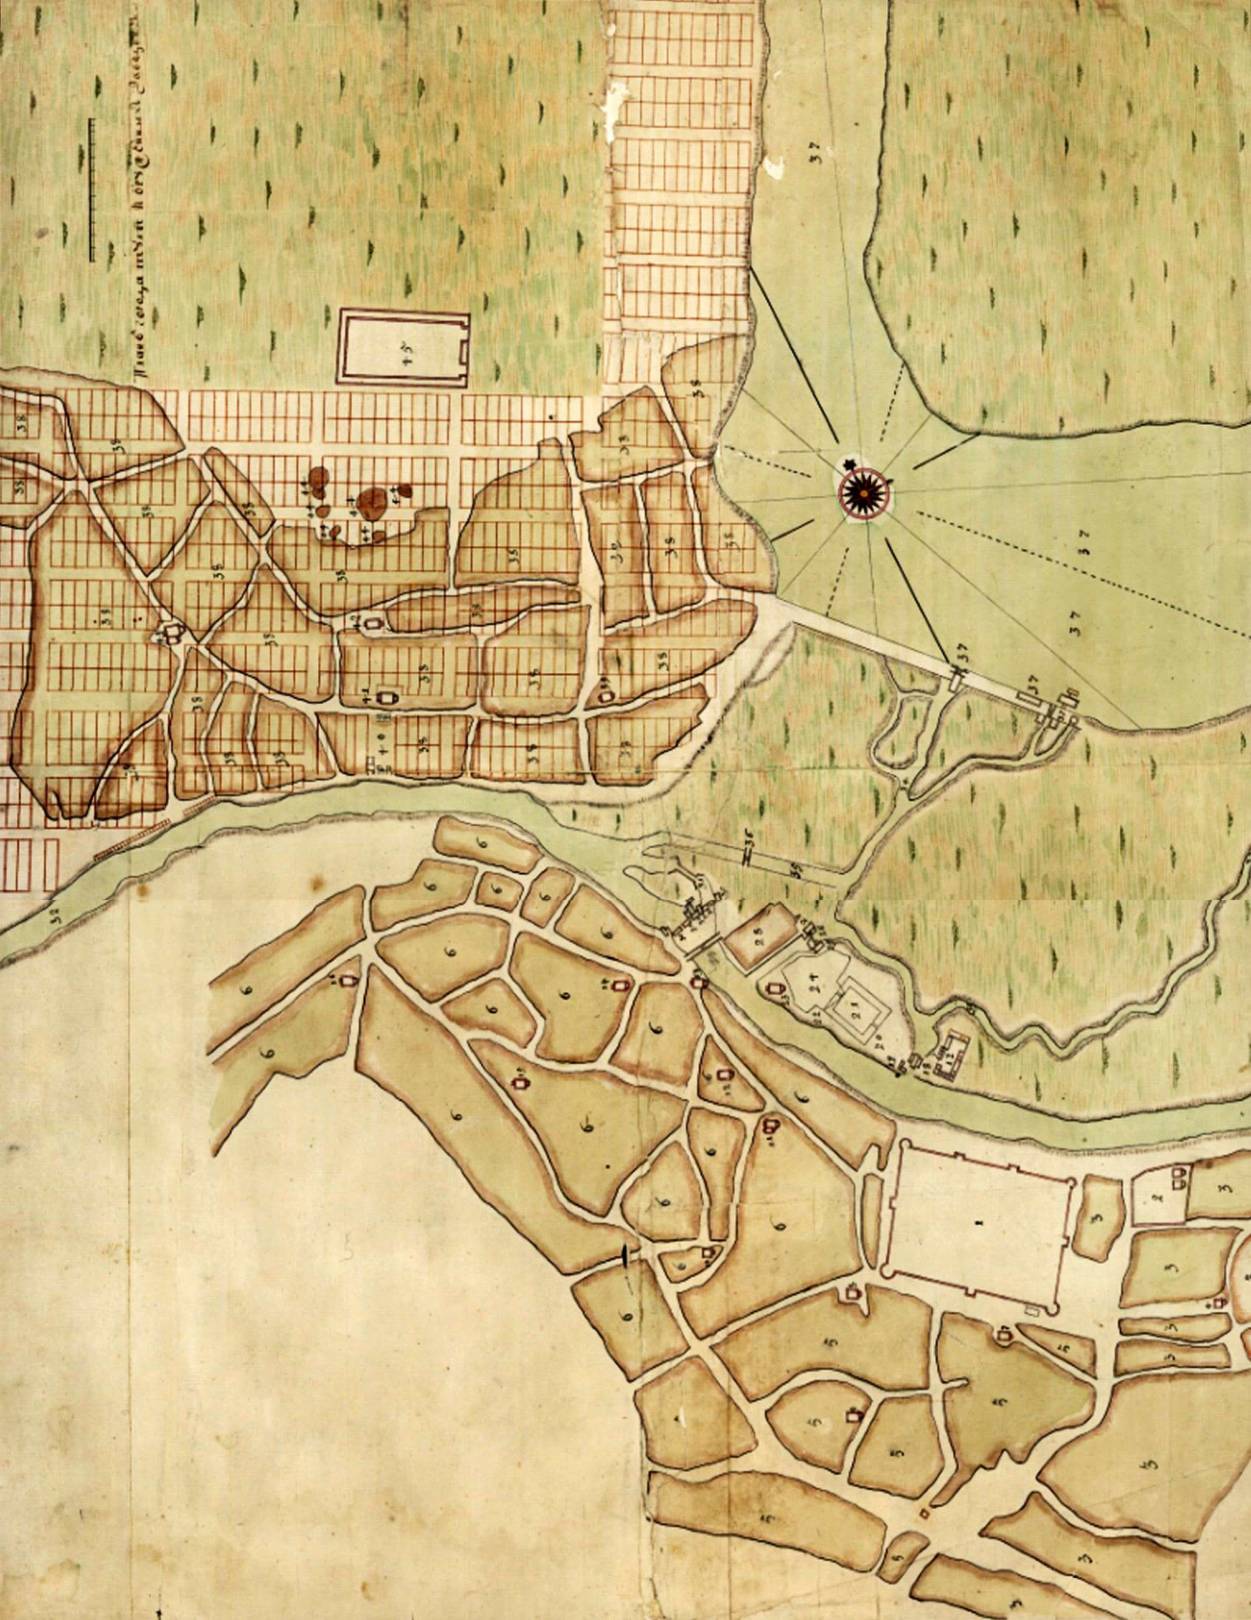 План перепланировки Тулы 1740 год. Перепланировка коснулась только "Заречья" (слева вверху)